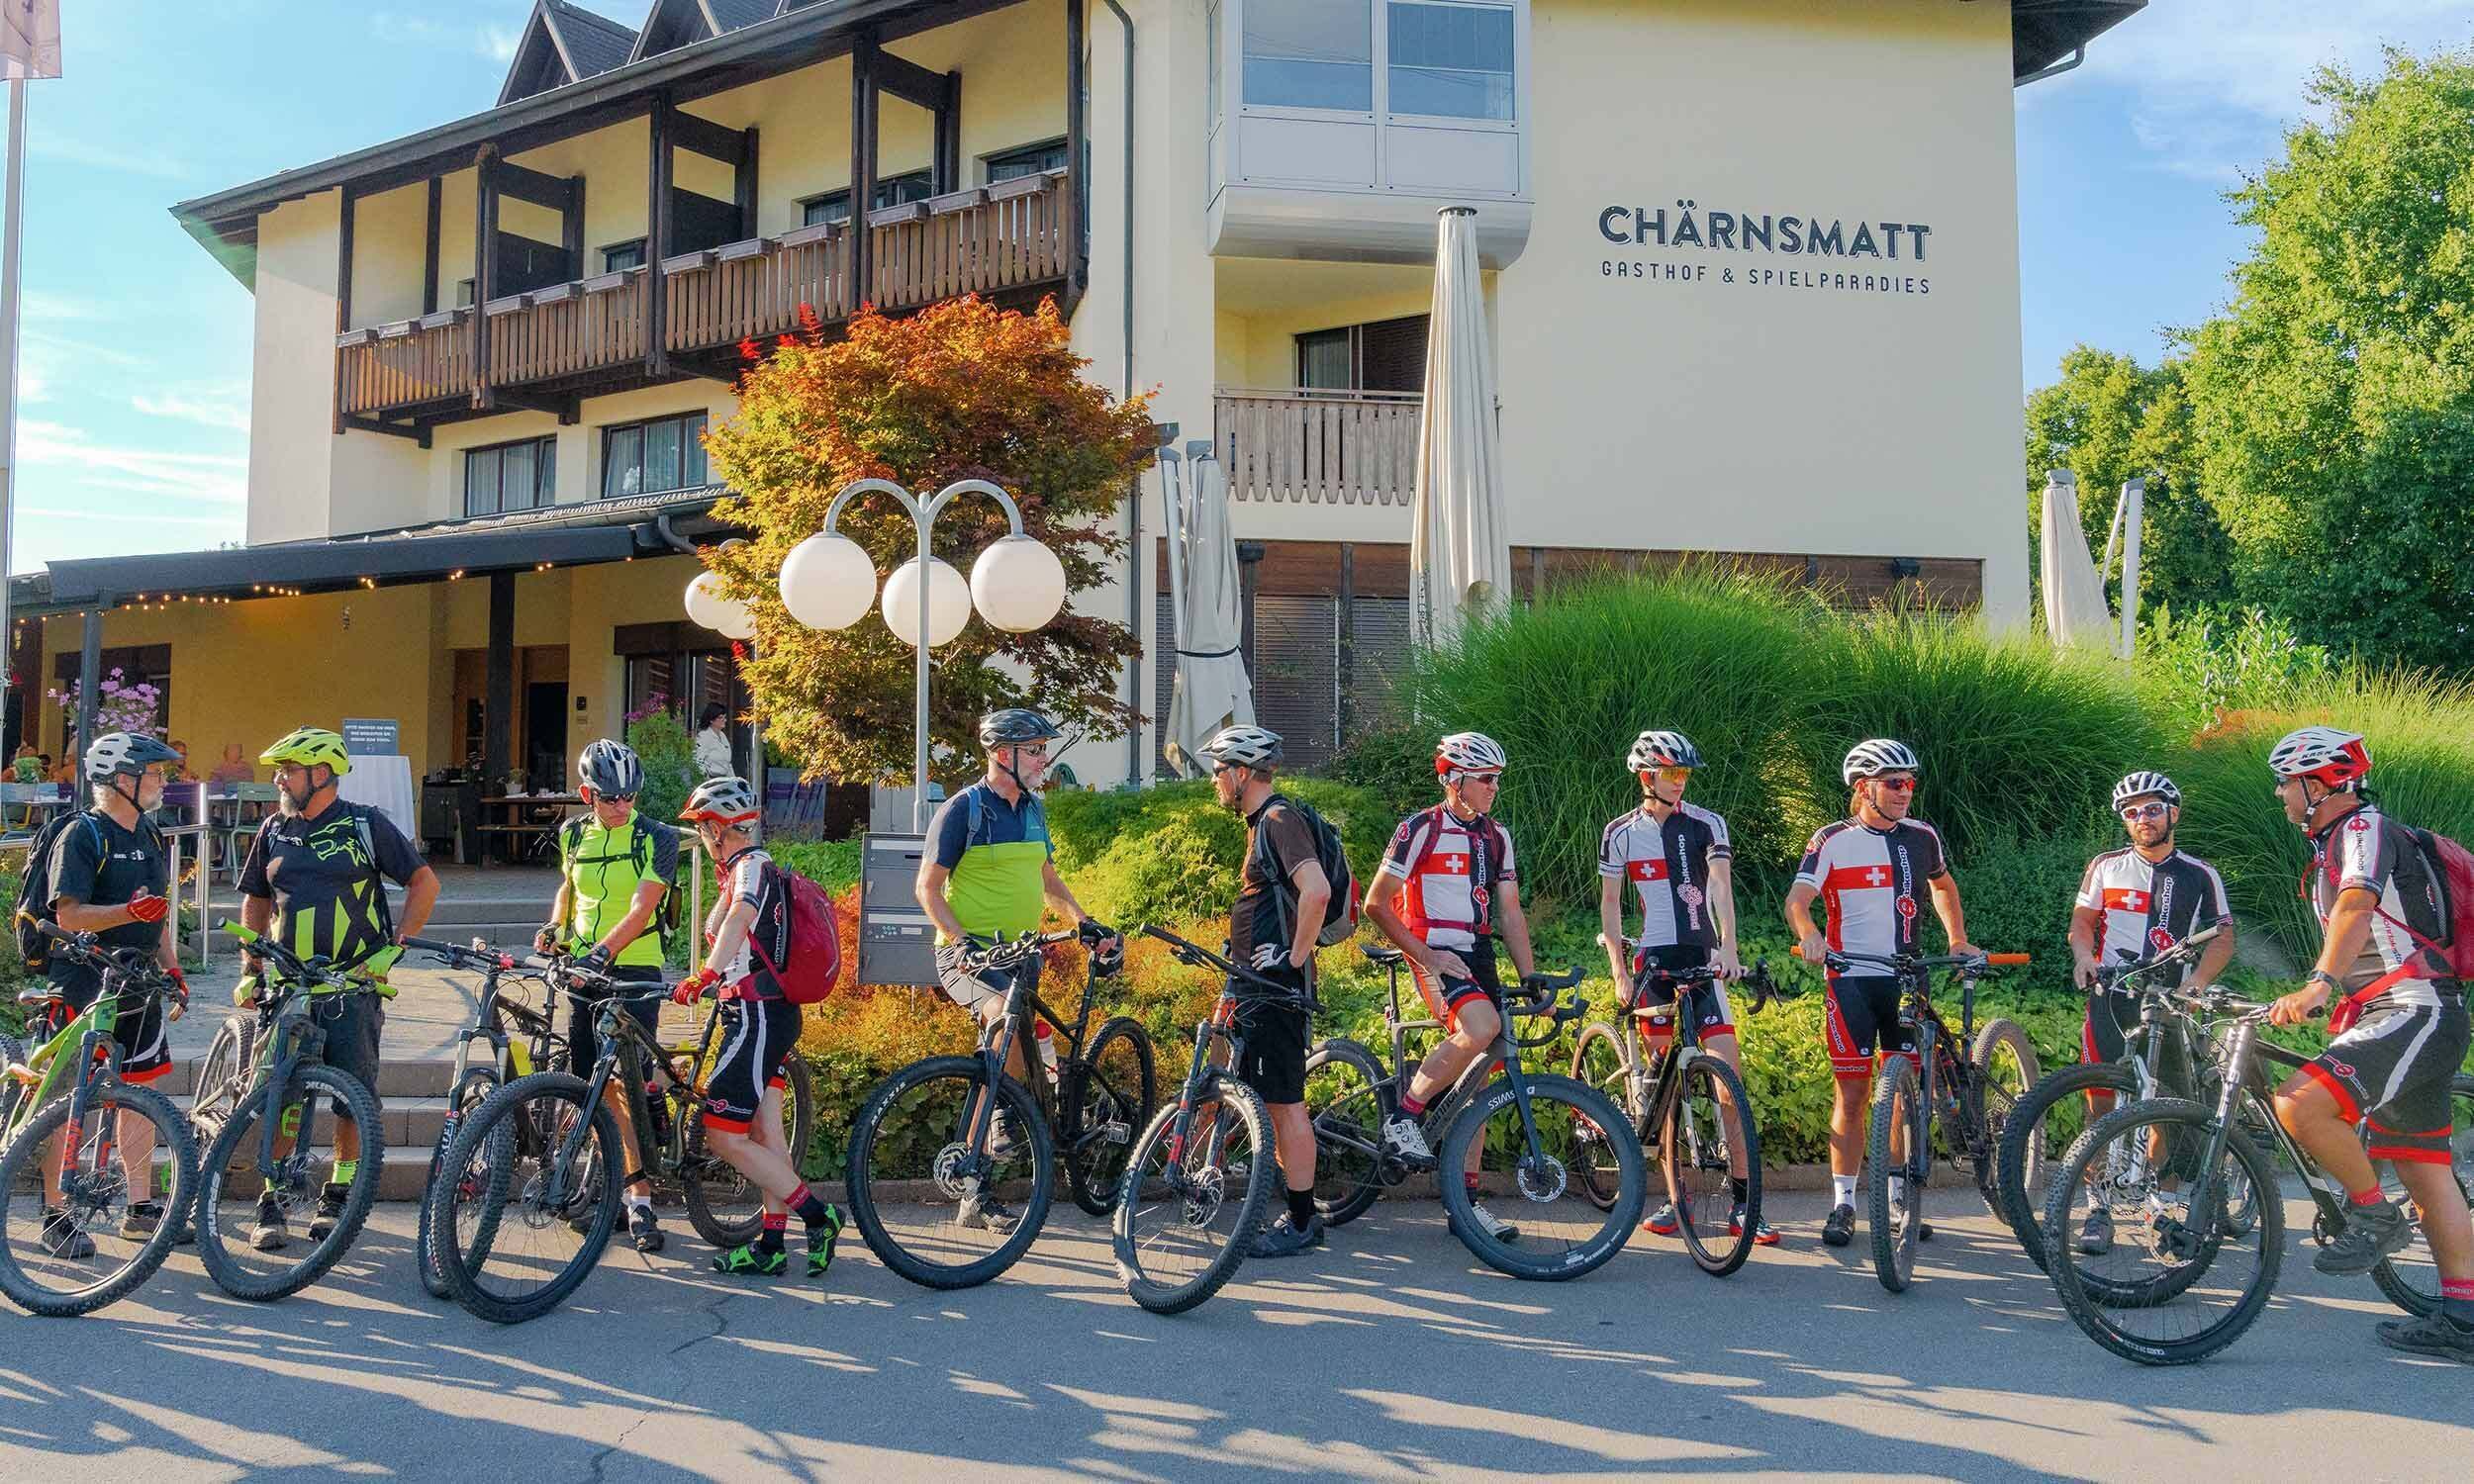 Bikehotel hotel restaurant chaernsmatt rothenburg 02